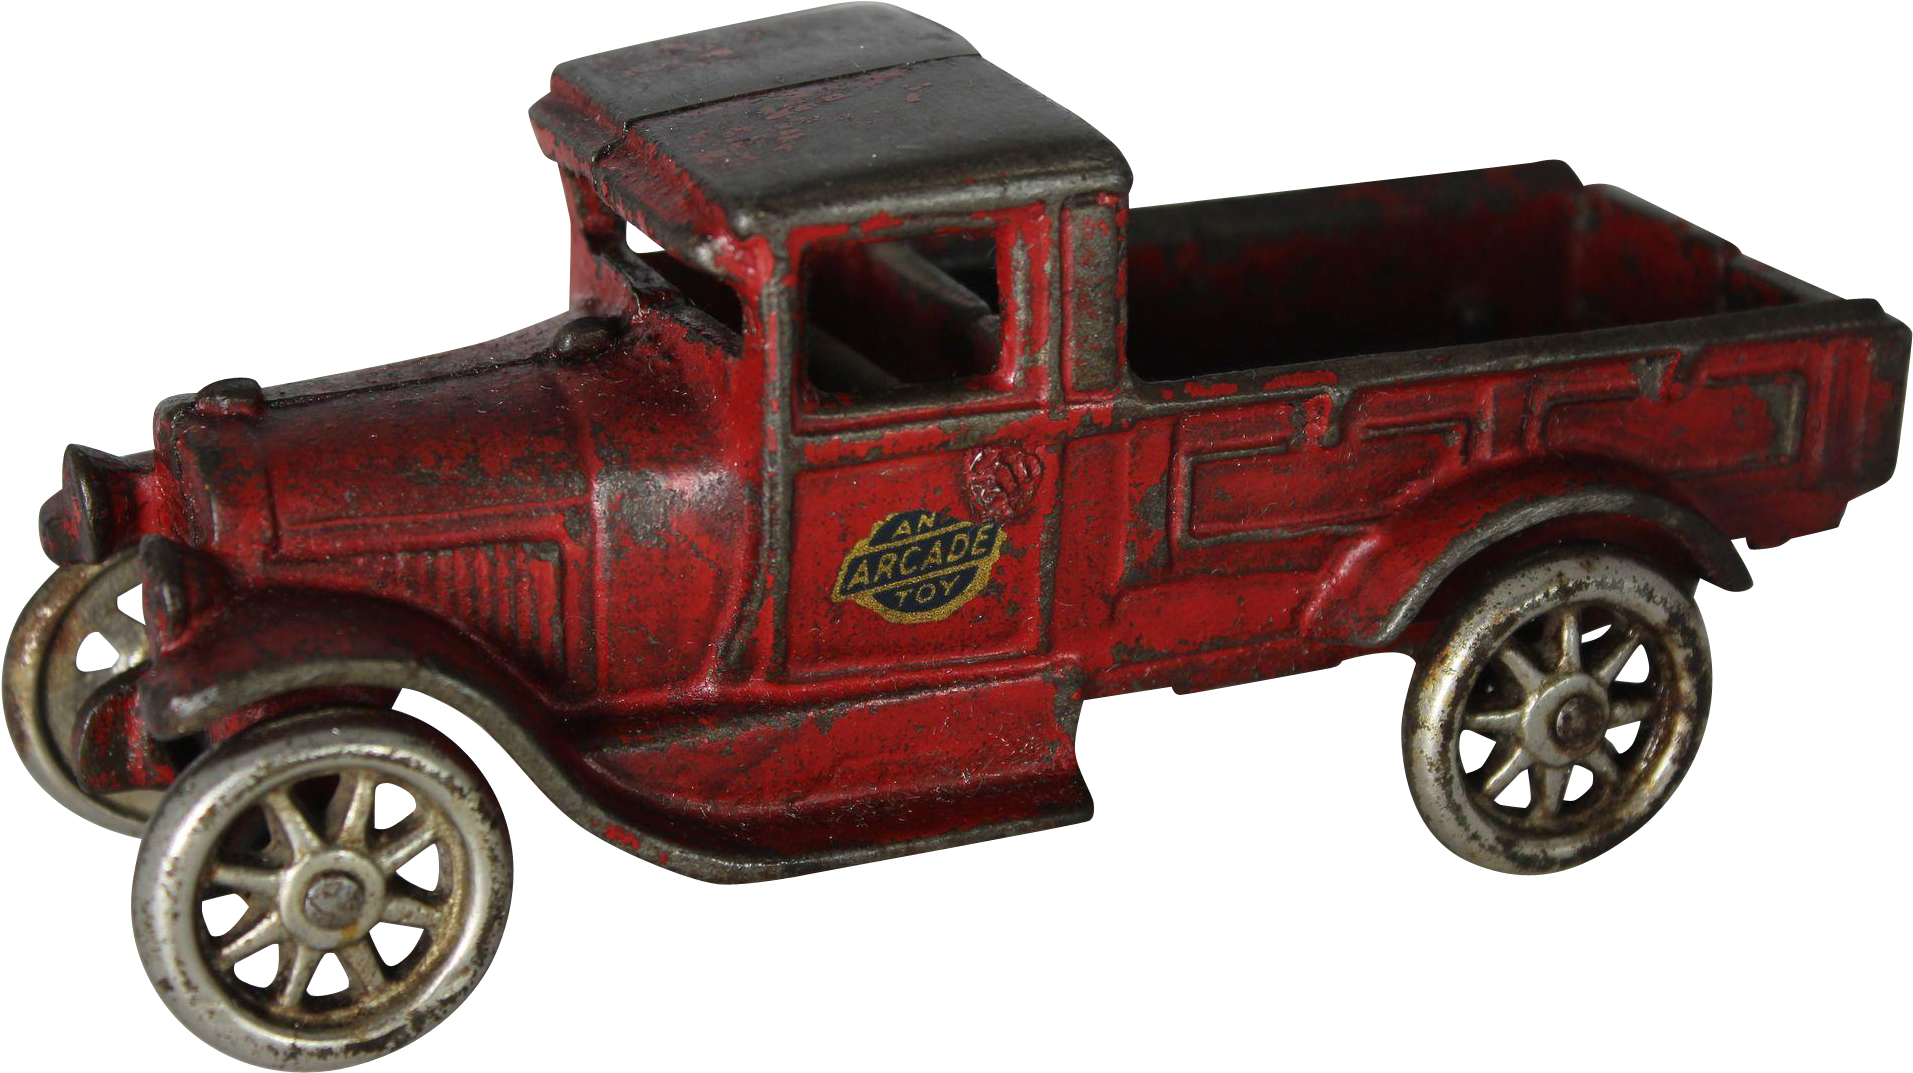 Vintage Toy Car - Vintage Car Toy Png (1912x1912), Png Download